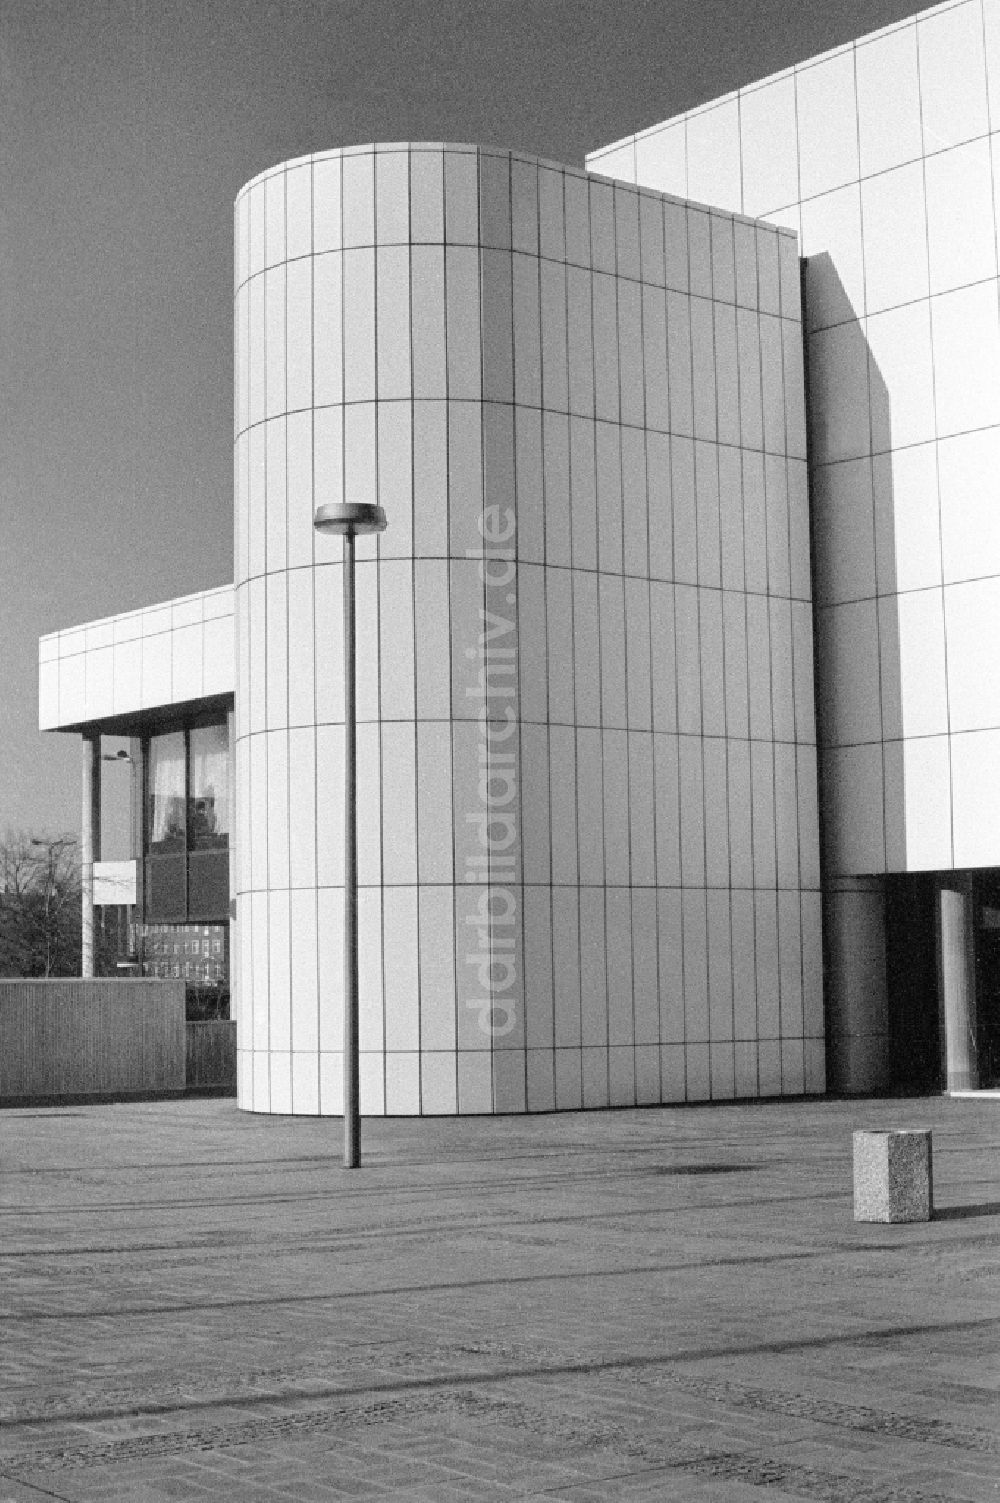 DDR-Bildarchiv: Berlin - Sockelbebauung Internationales Handelszentrum an der Friedrichstraße in Ostberlin in der DDR